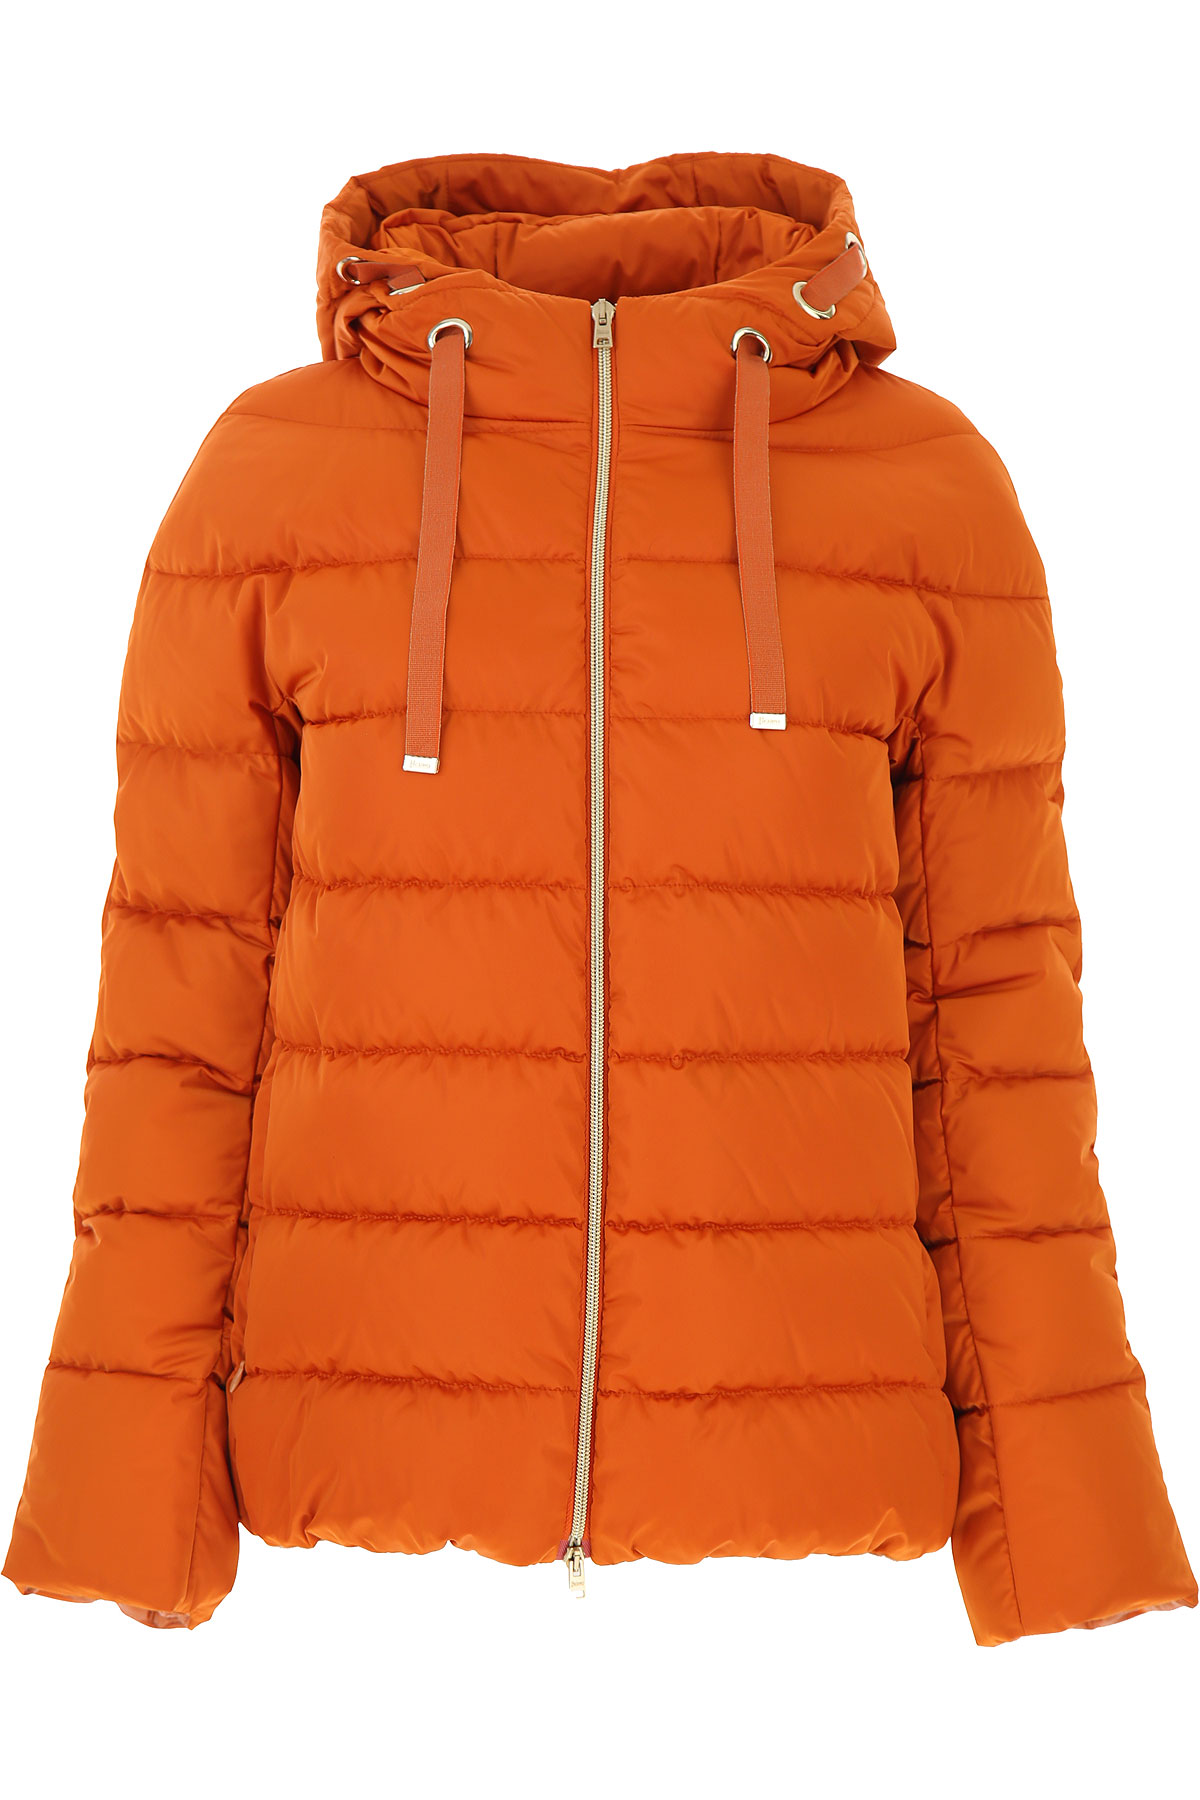 Herno Daunenjacke für Damen, wattierte Ski Jacke Günstig im Sale, Orange, Polyester, 2017, 44 M